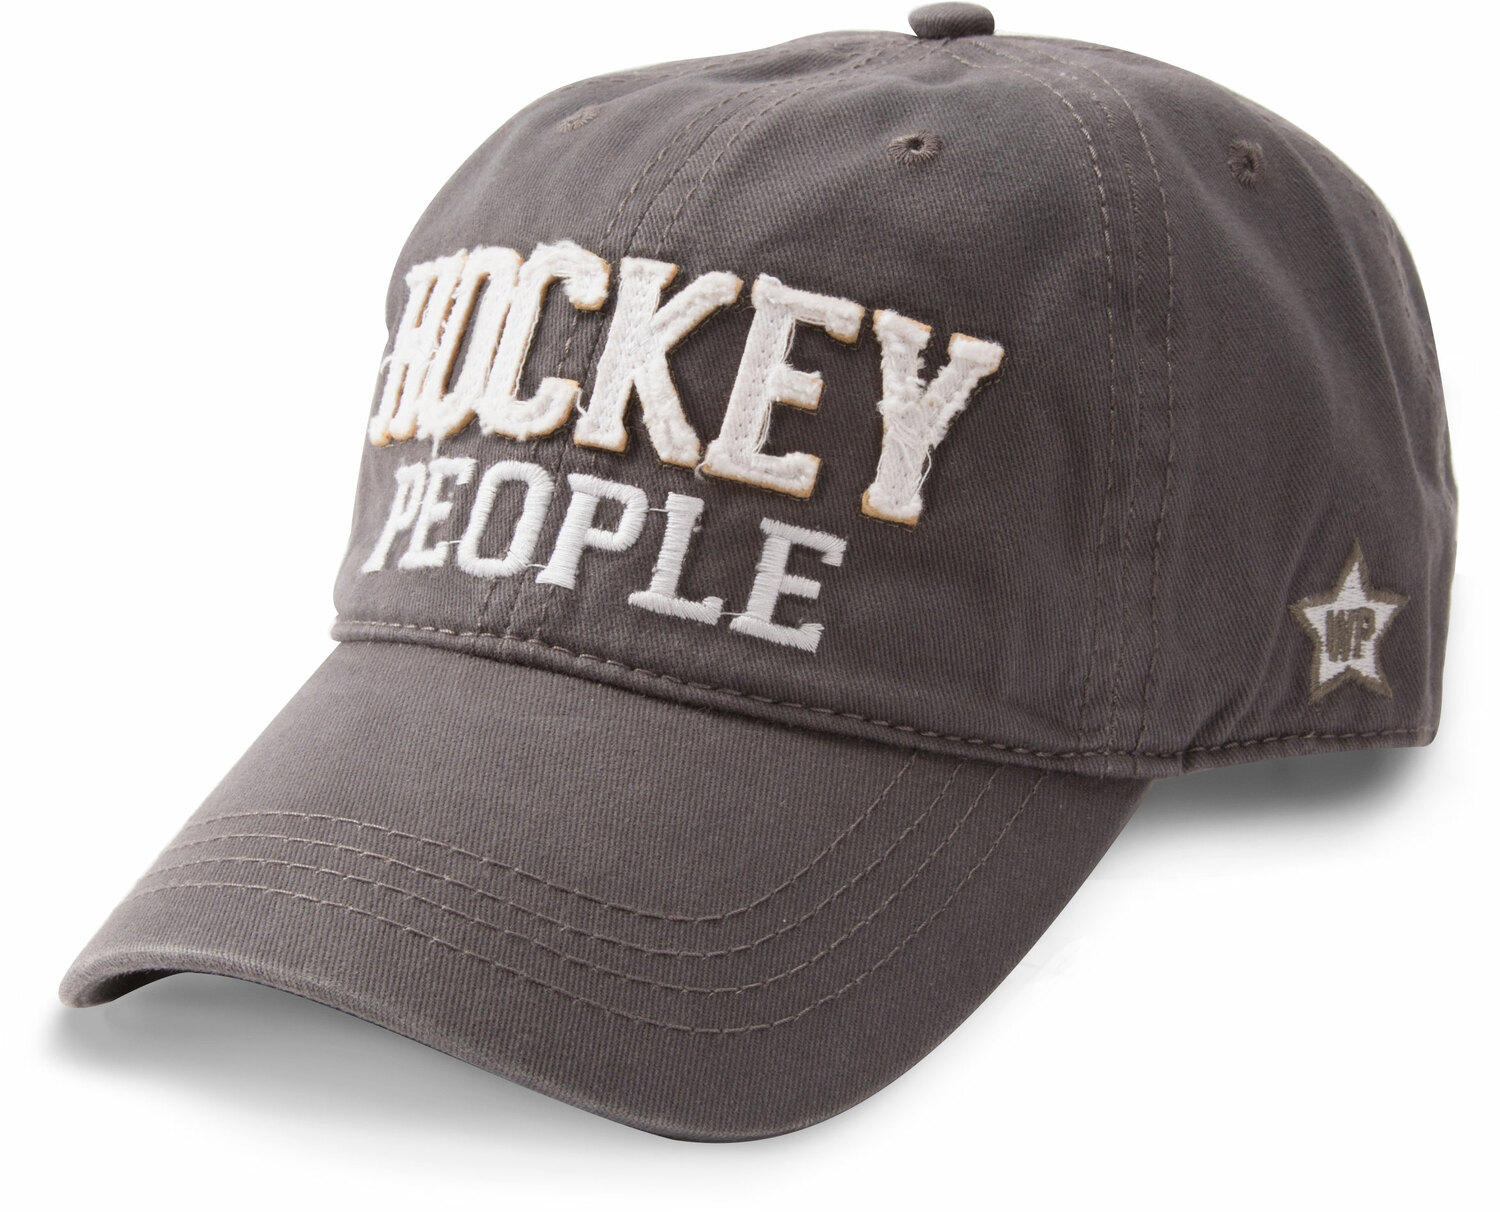 Hockey People by We People - Hockey People - Dark Gray Adjustable Hat